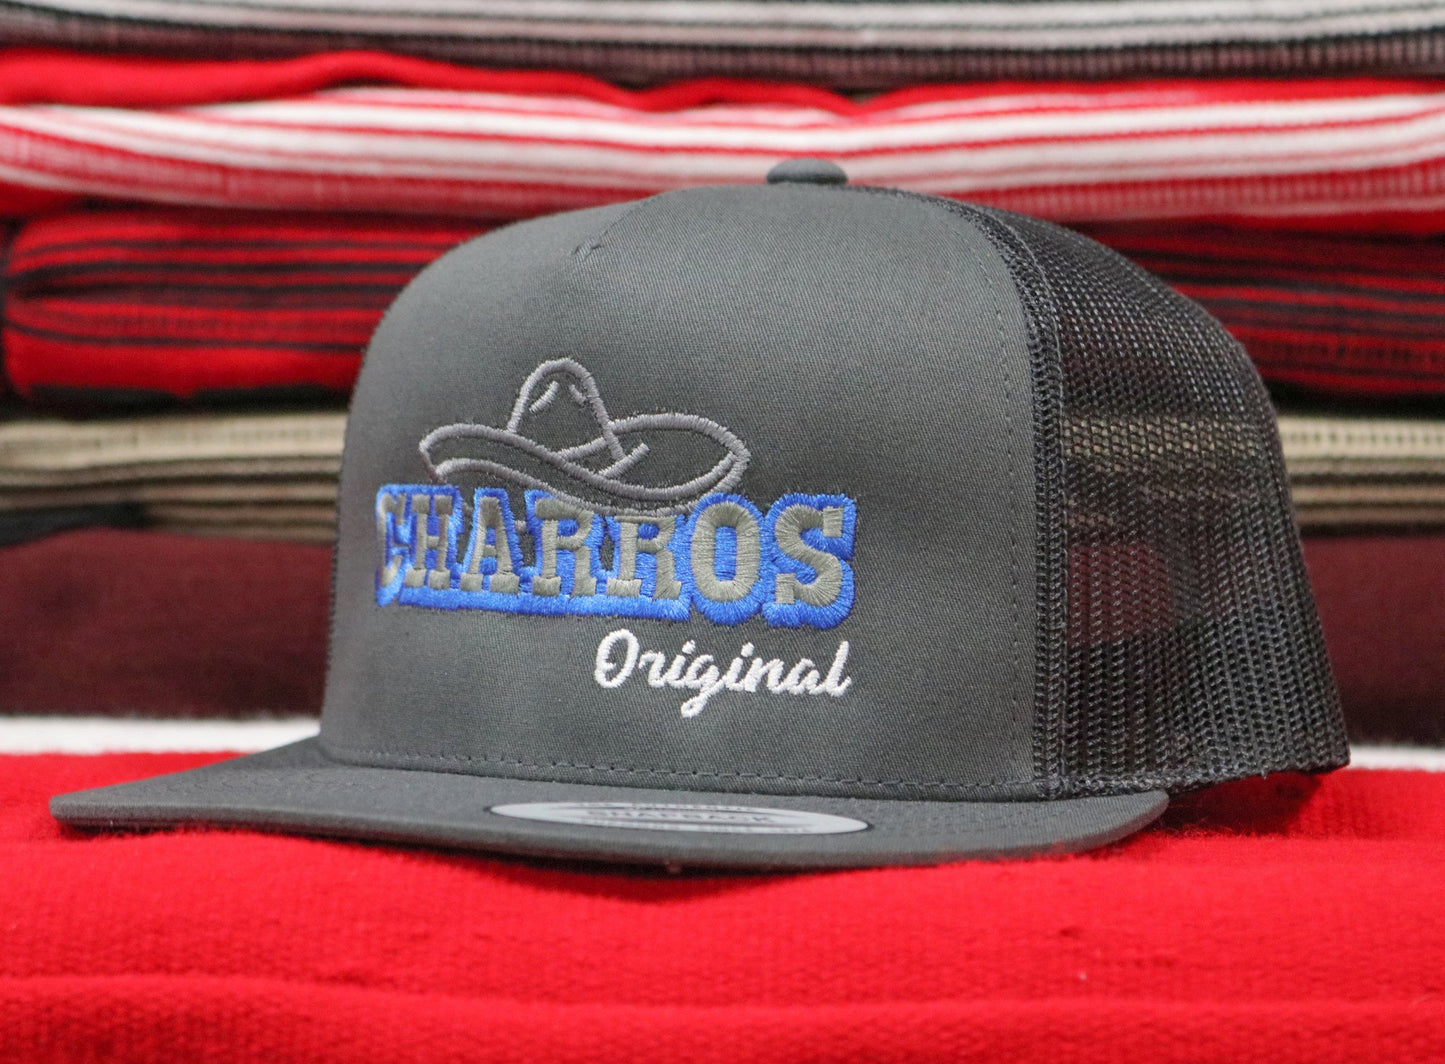 Charros Original Charcoal "Sombrero" Hats